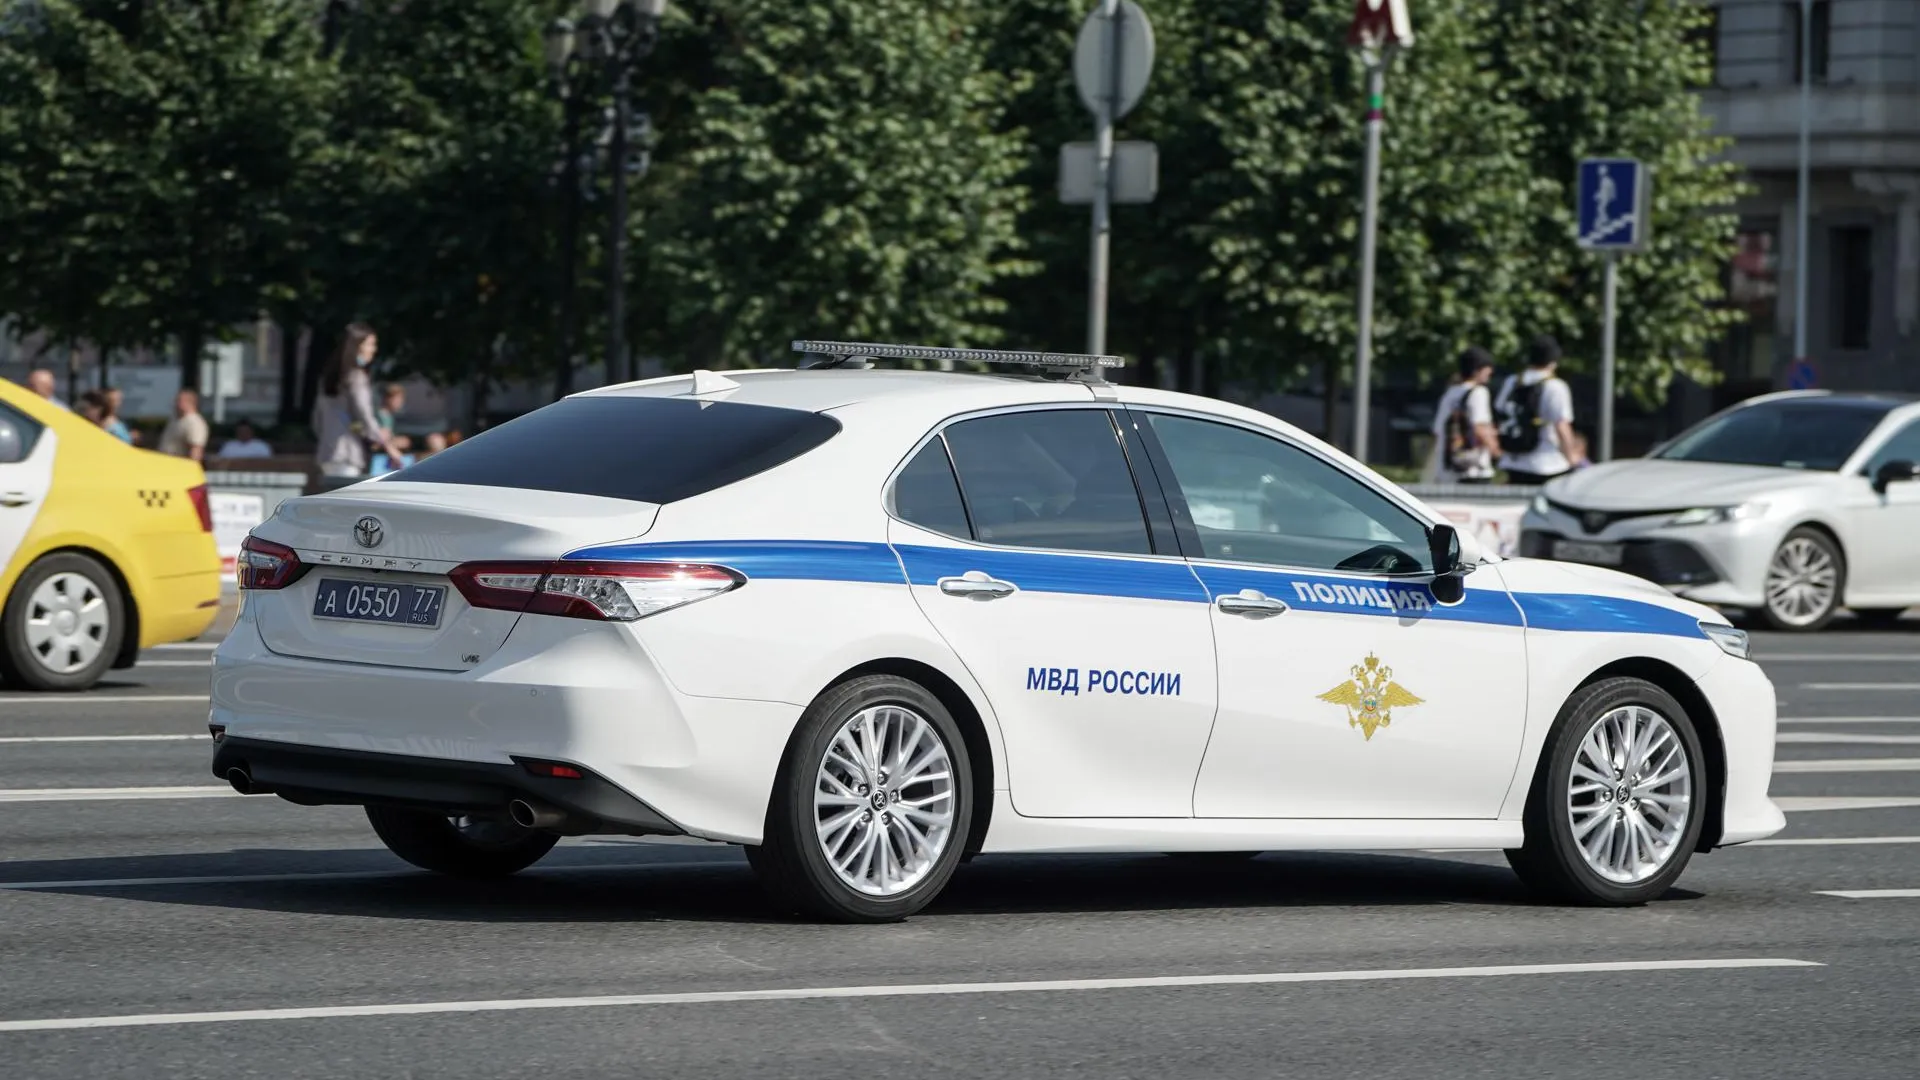 Полиция задержала автолюбителей Москвы за планирование несанкционированного автопробега